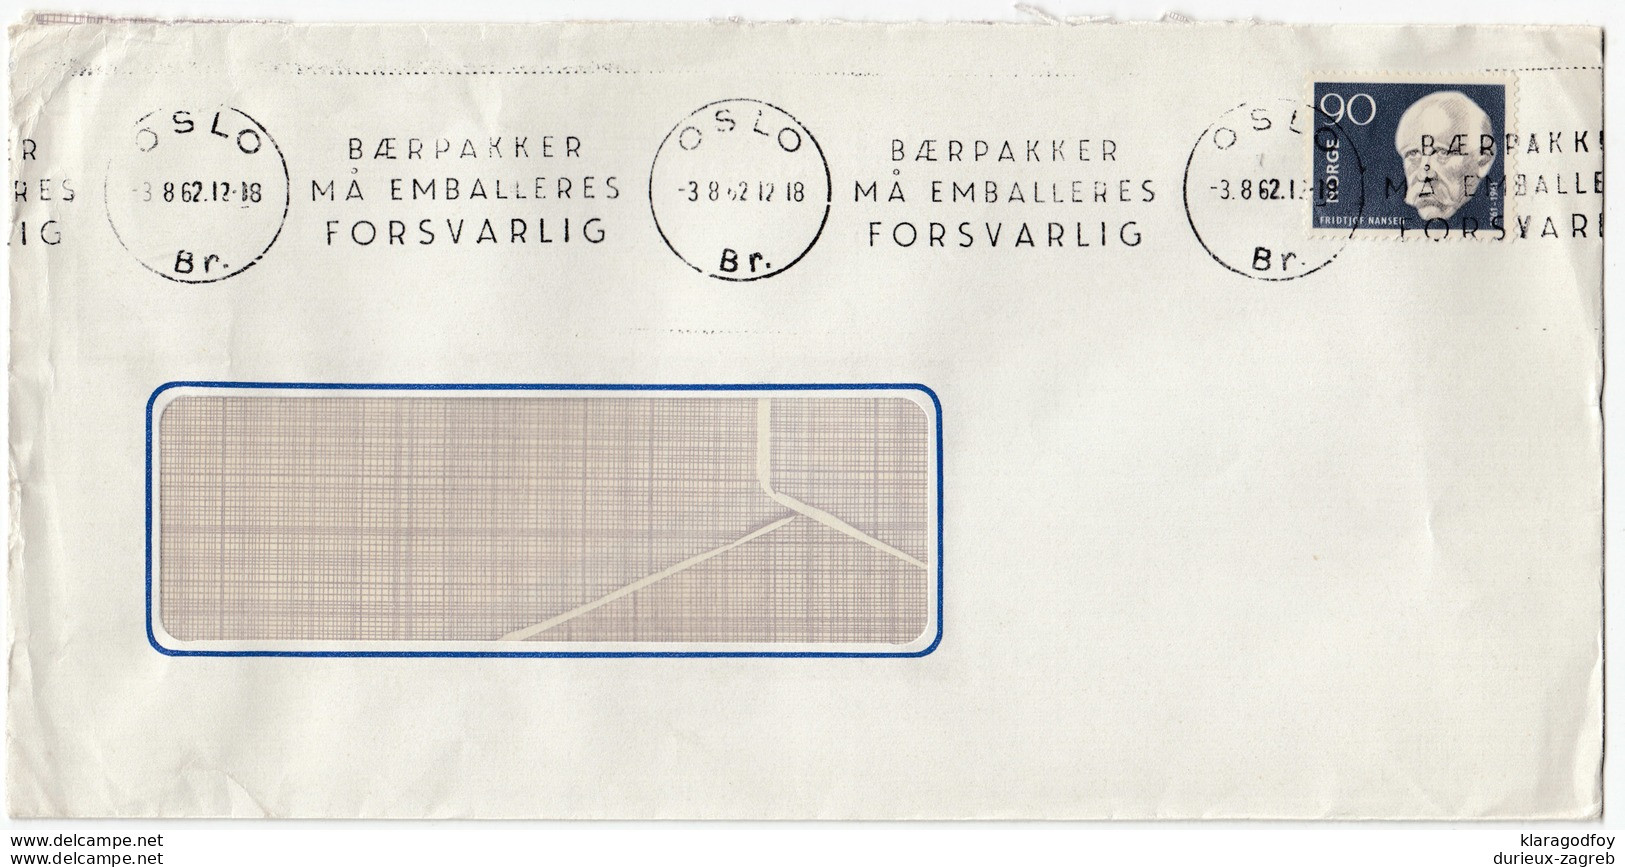 Baerpakker Ma Emalleres Forsvarlig Slogan Postmark On Letter Cover Travelled 1962  Bb161210 - Covers & Documents